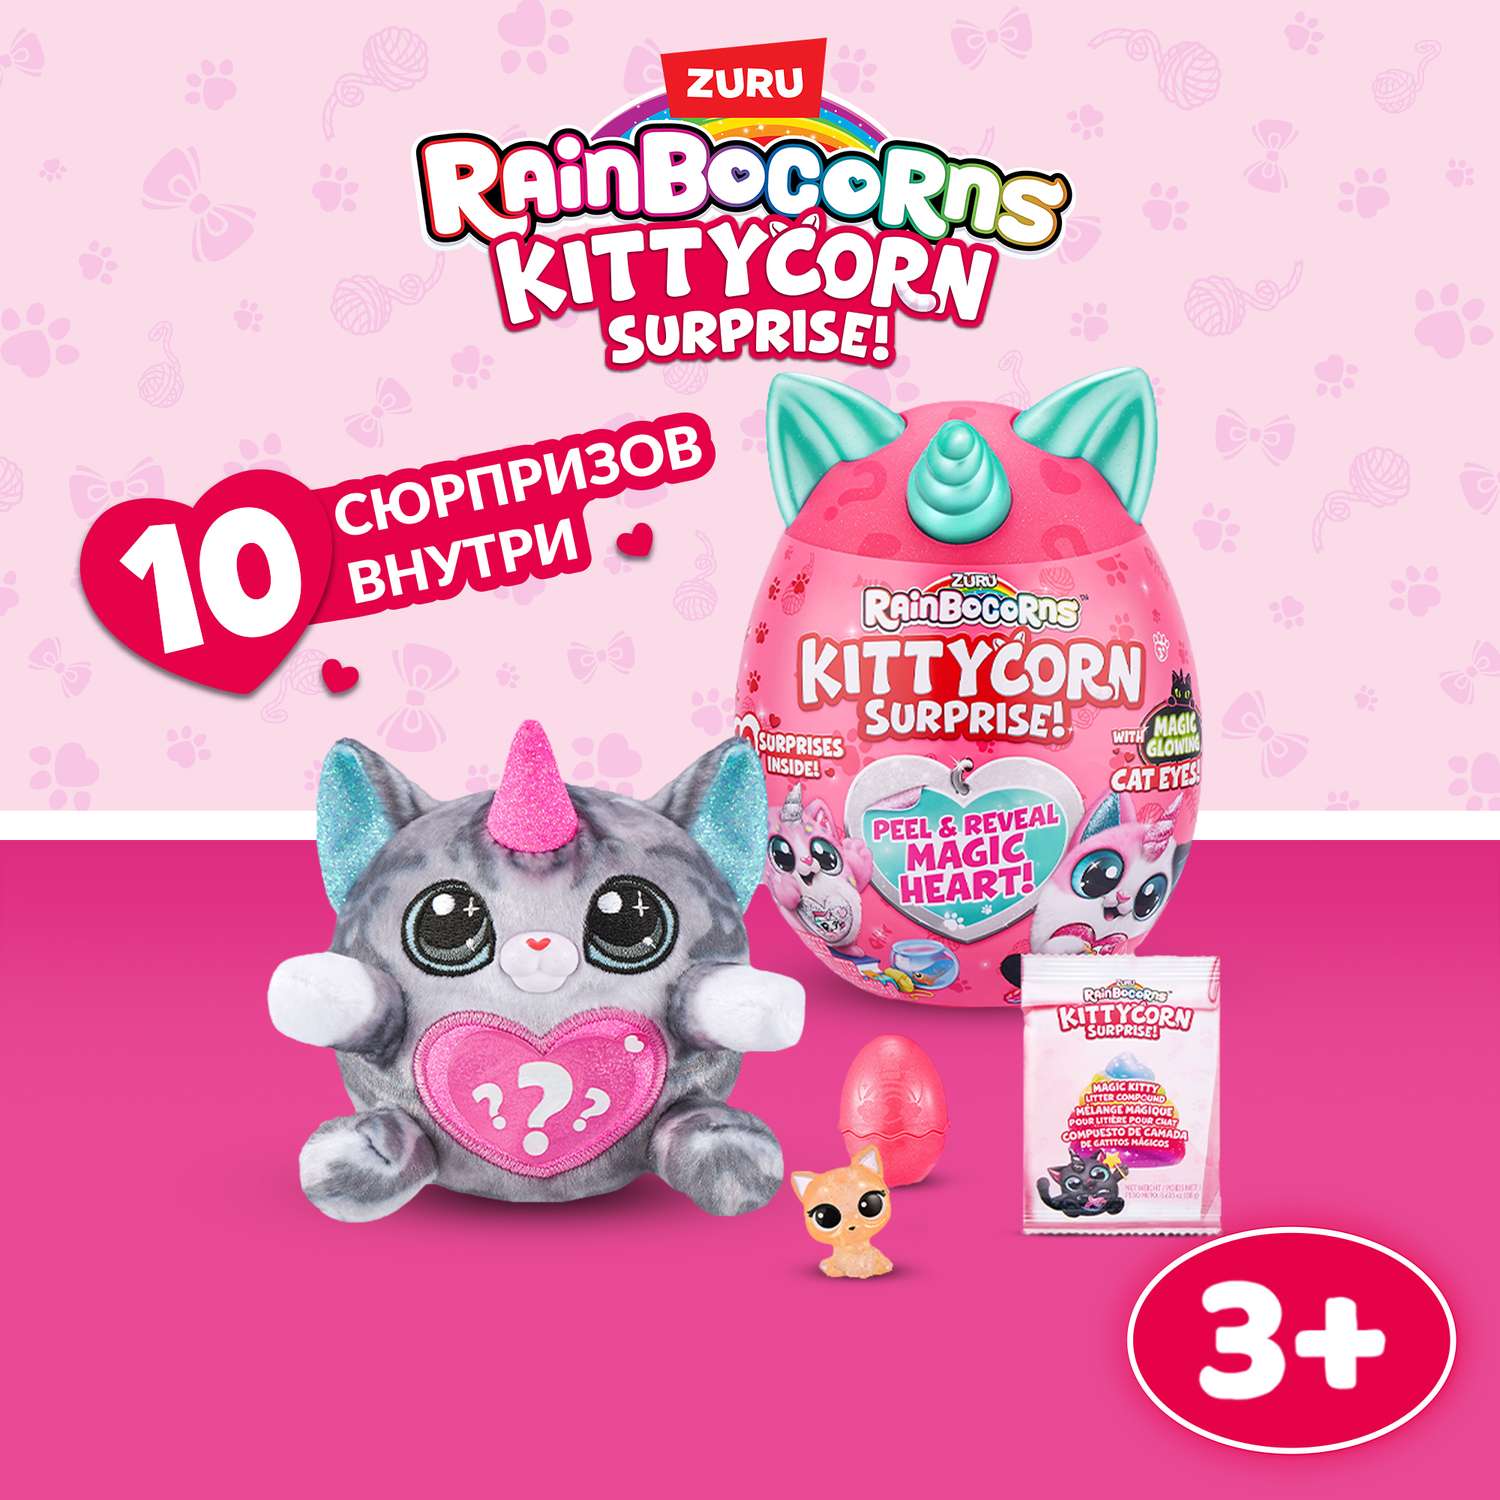 Игрушка Rainbocorns Kittycorn в непрозрачной упаковке (Сюрприз) 9259 - фото 1